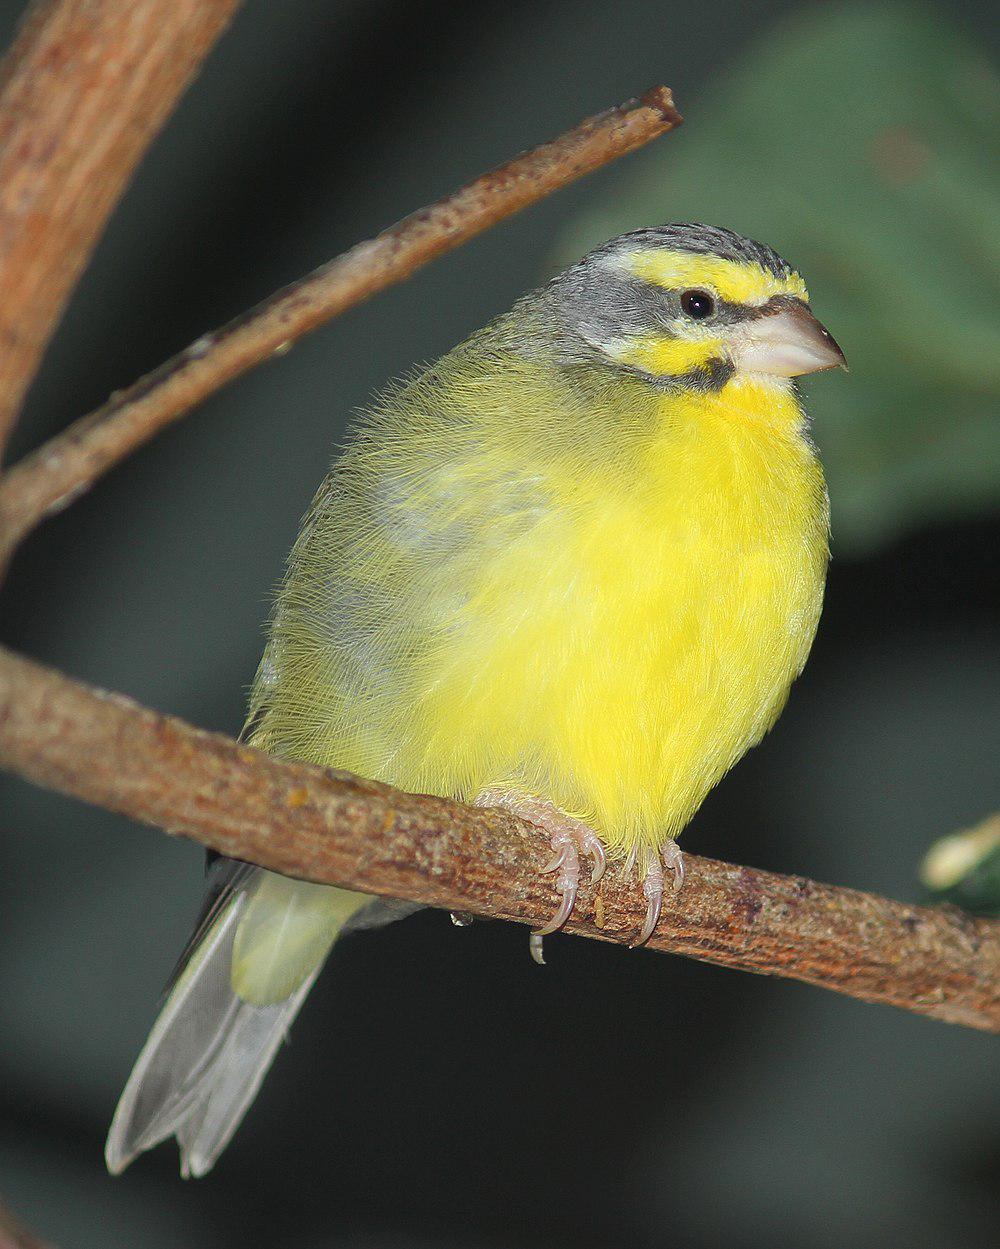 黄额丝雀 / Yellow-fronted Canary / Crithagra mozambica